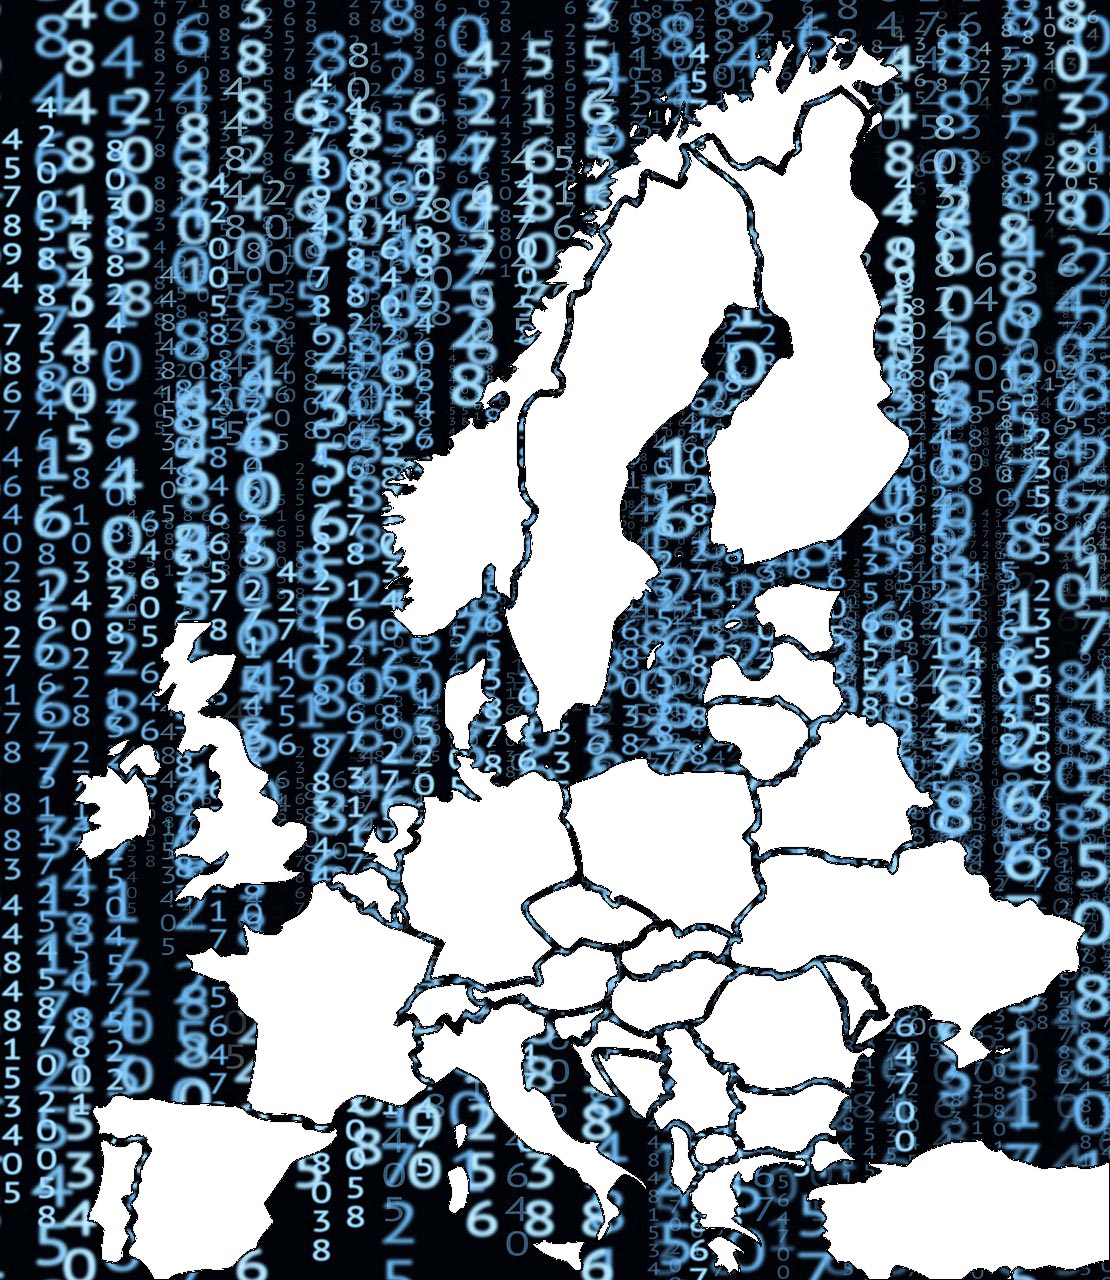 Landkarte von der EU vor Zahlen-Hintergrund